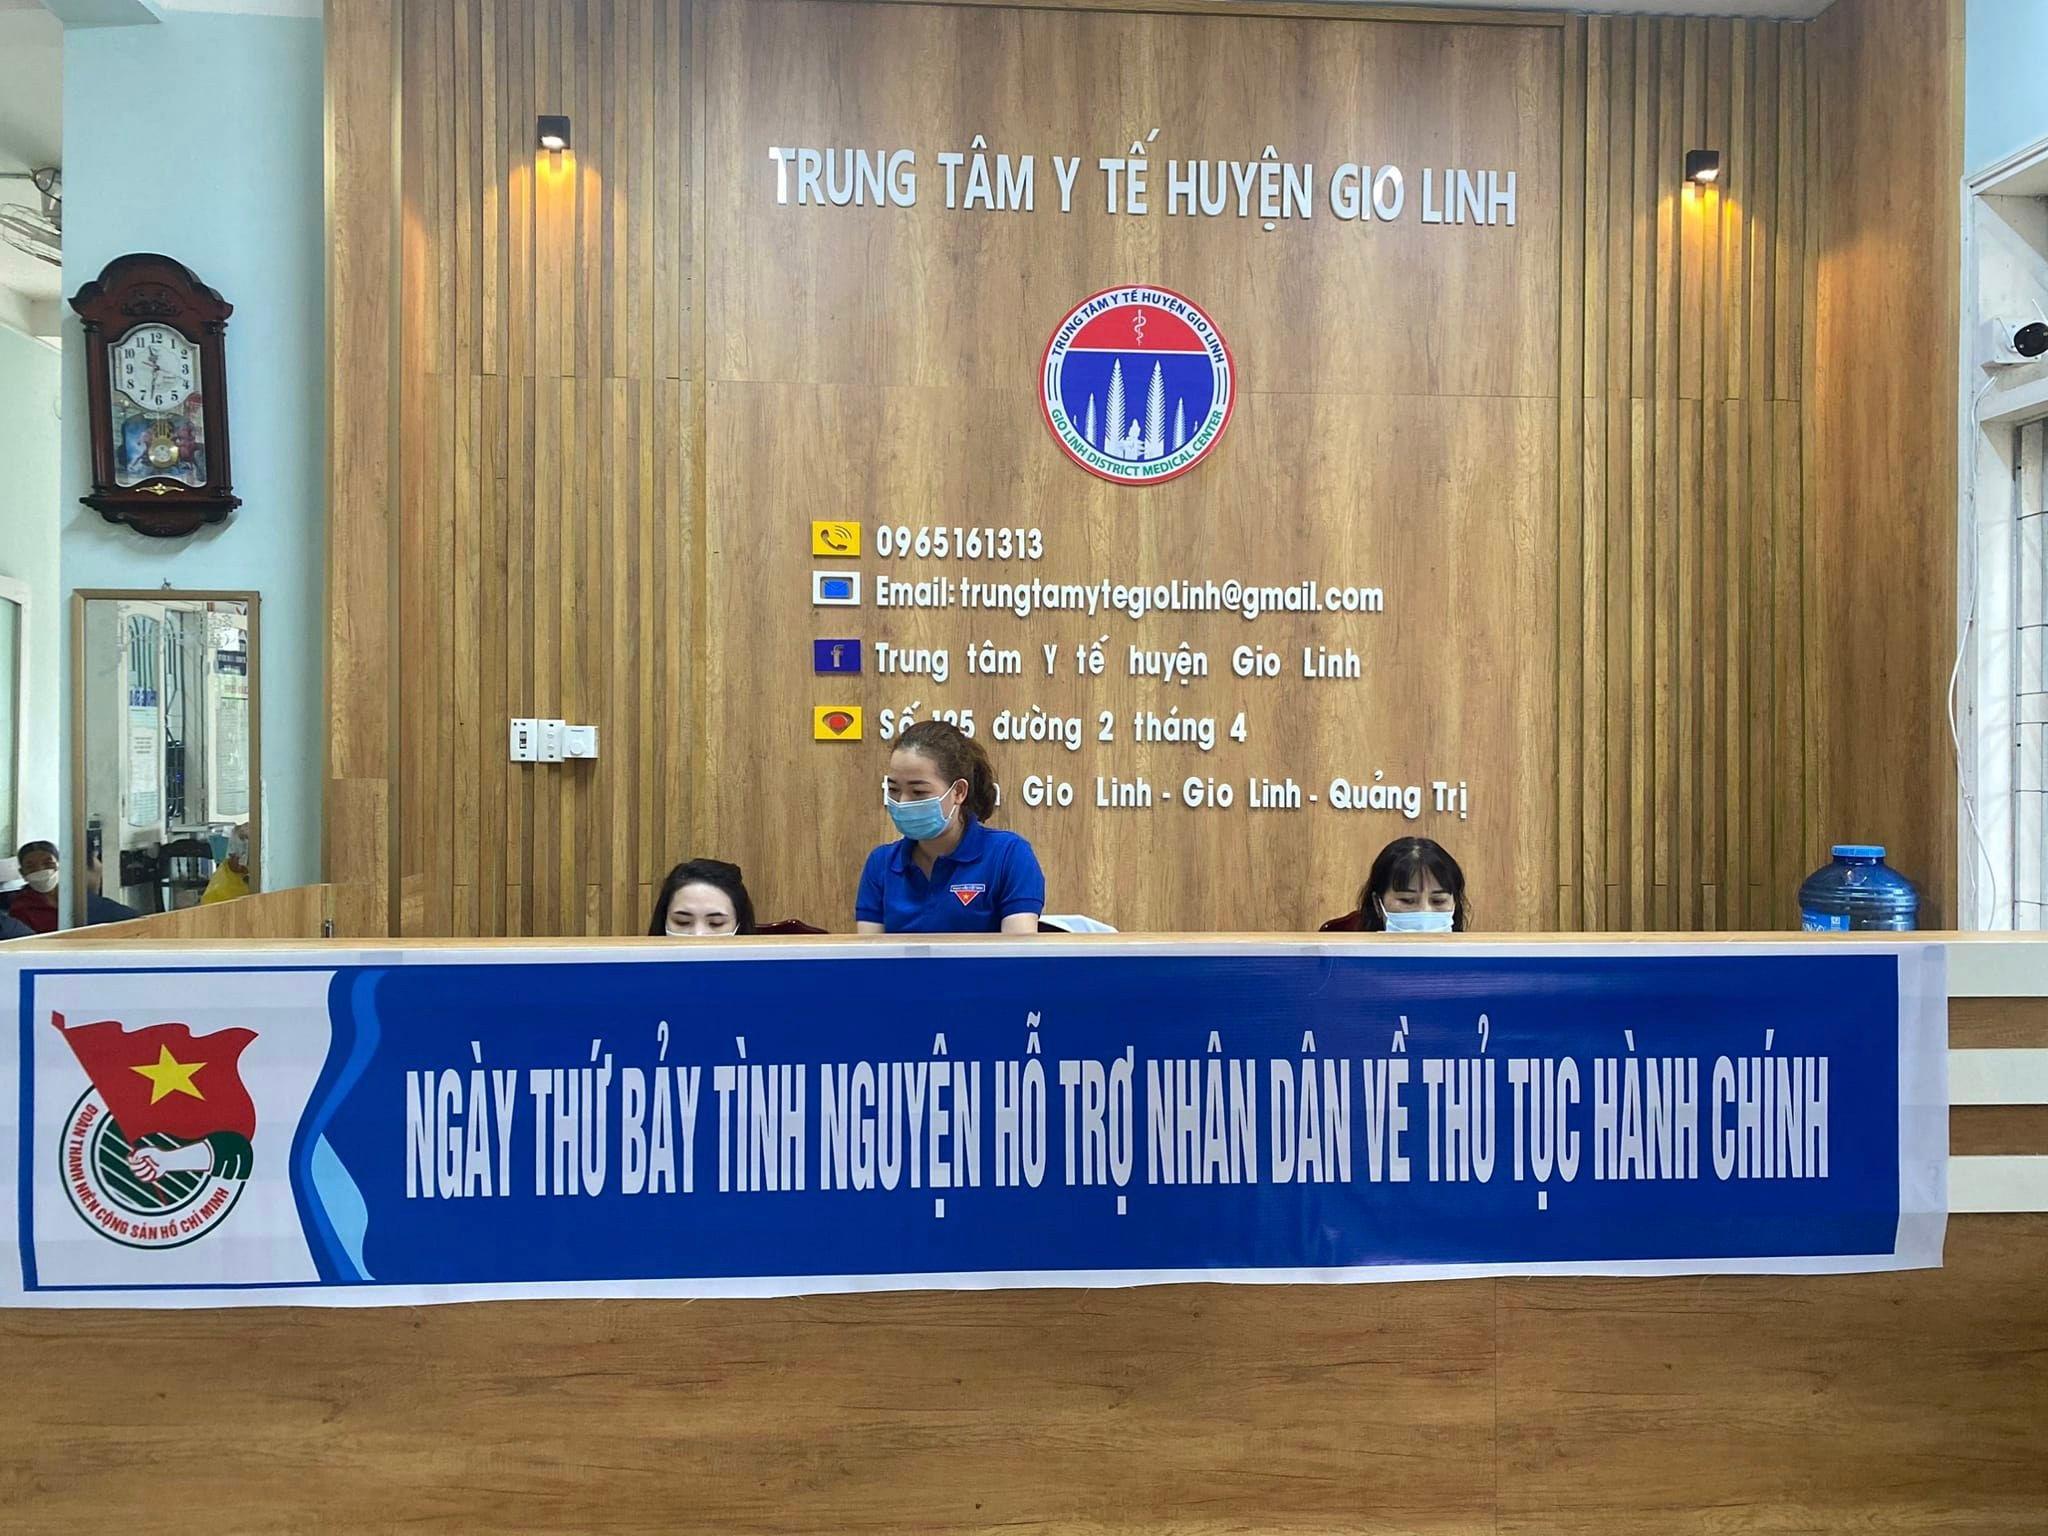 Tuổi trẻ huyện Gio Linh tổ chức “Ngày thứ 7 tình nguyện - giải quyết thủ tục hành chính cho Nhân...